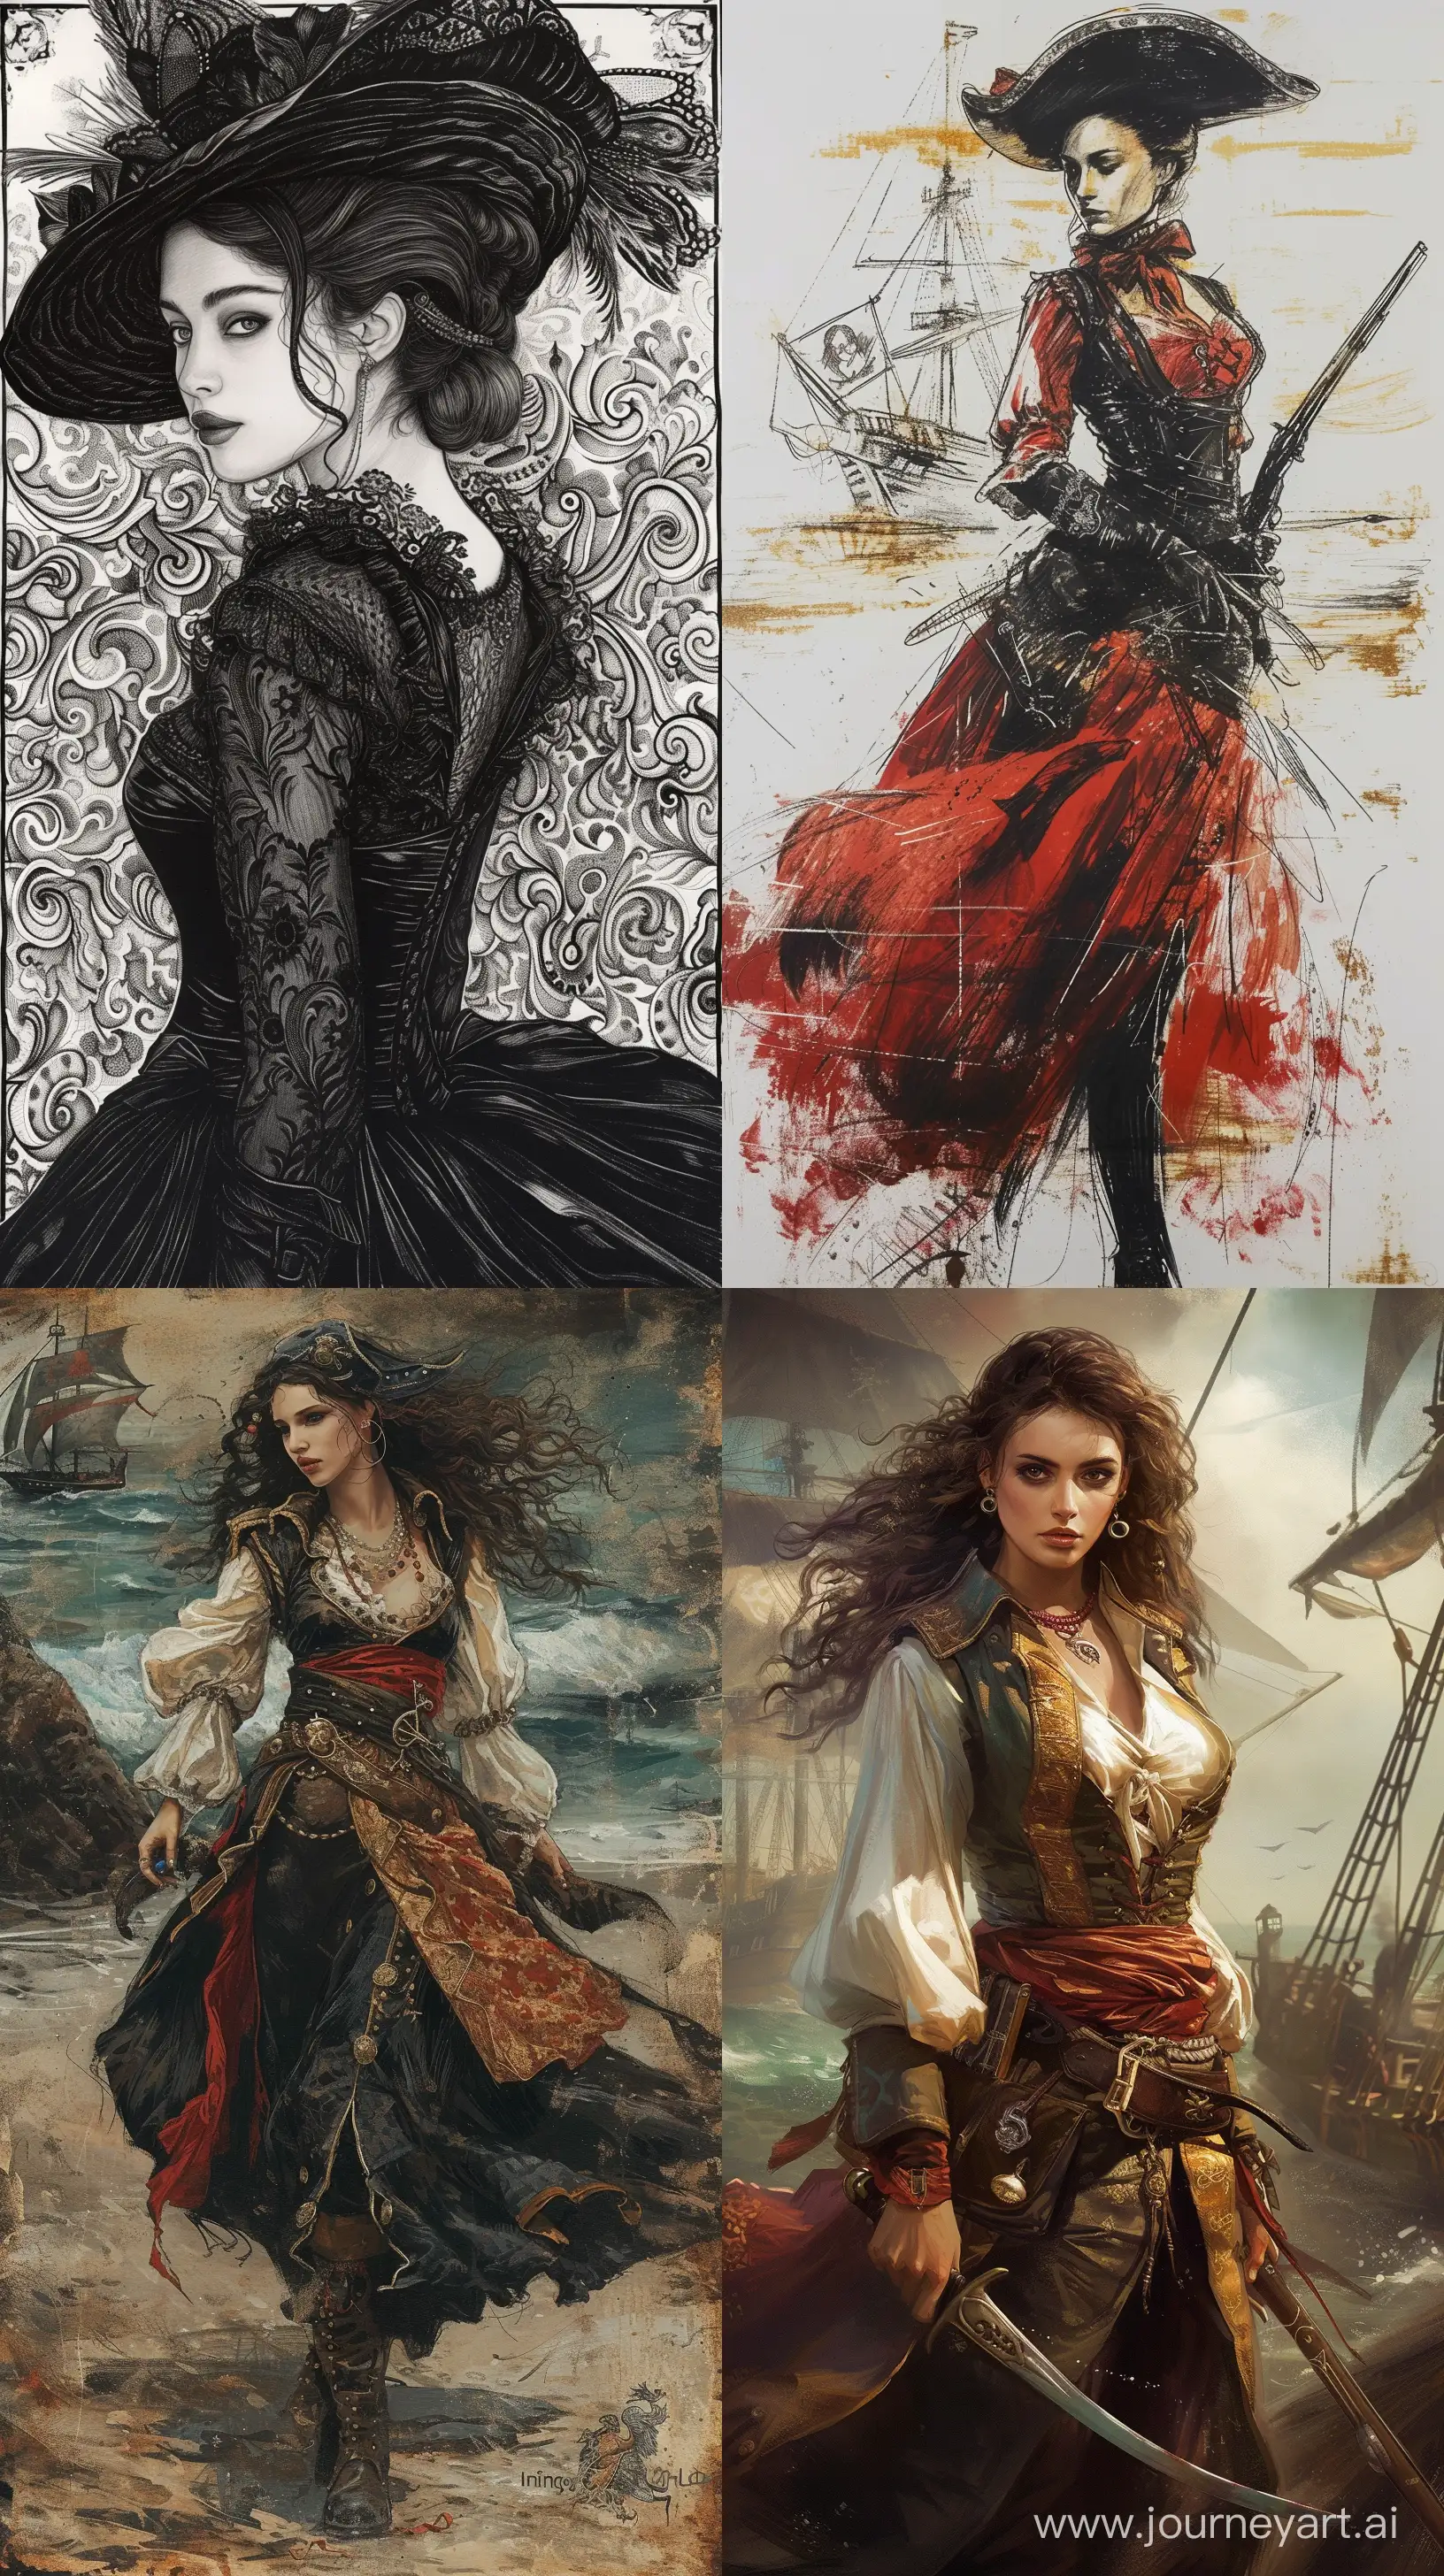 Pirate-Women-in-Intaglio-Style-Adventurous-Seafaring-Scene